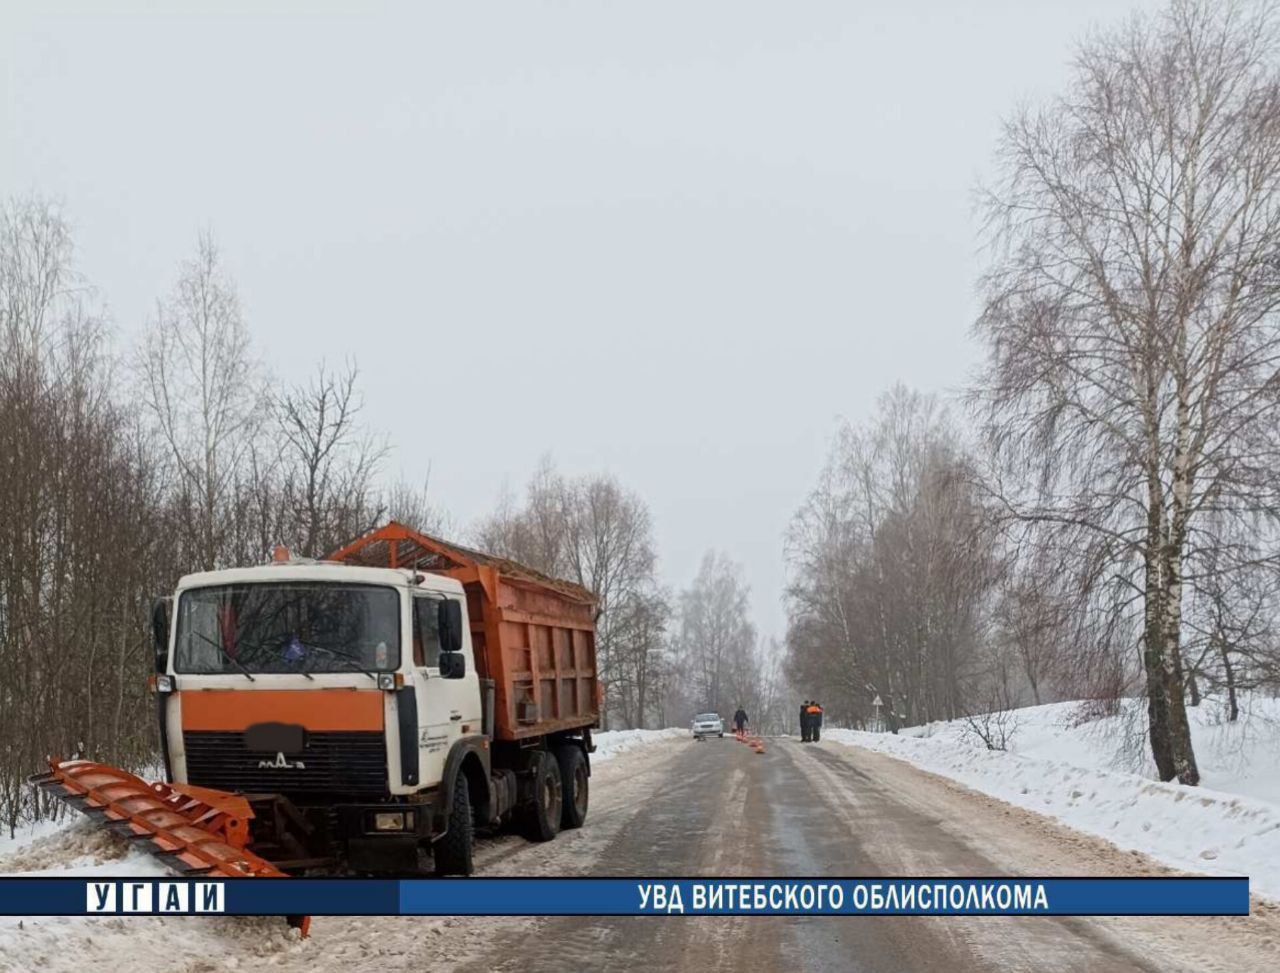 60 000 рублей получит школьник, которого сбил снегоуборщик в Чашникском районе — у него обезображено лицо